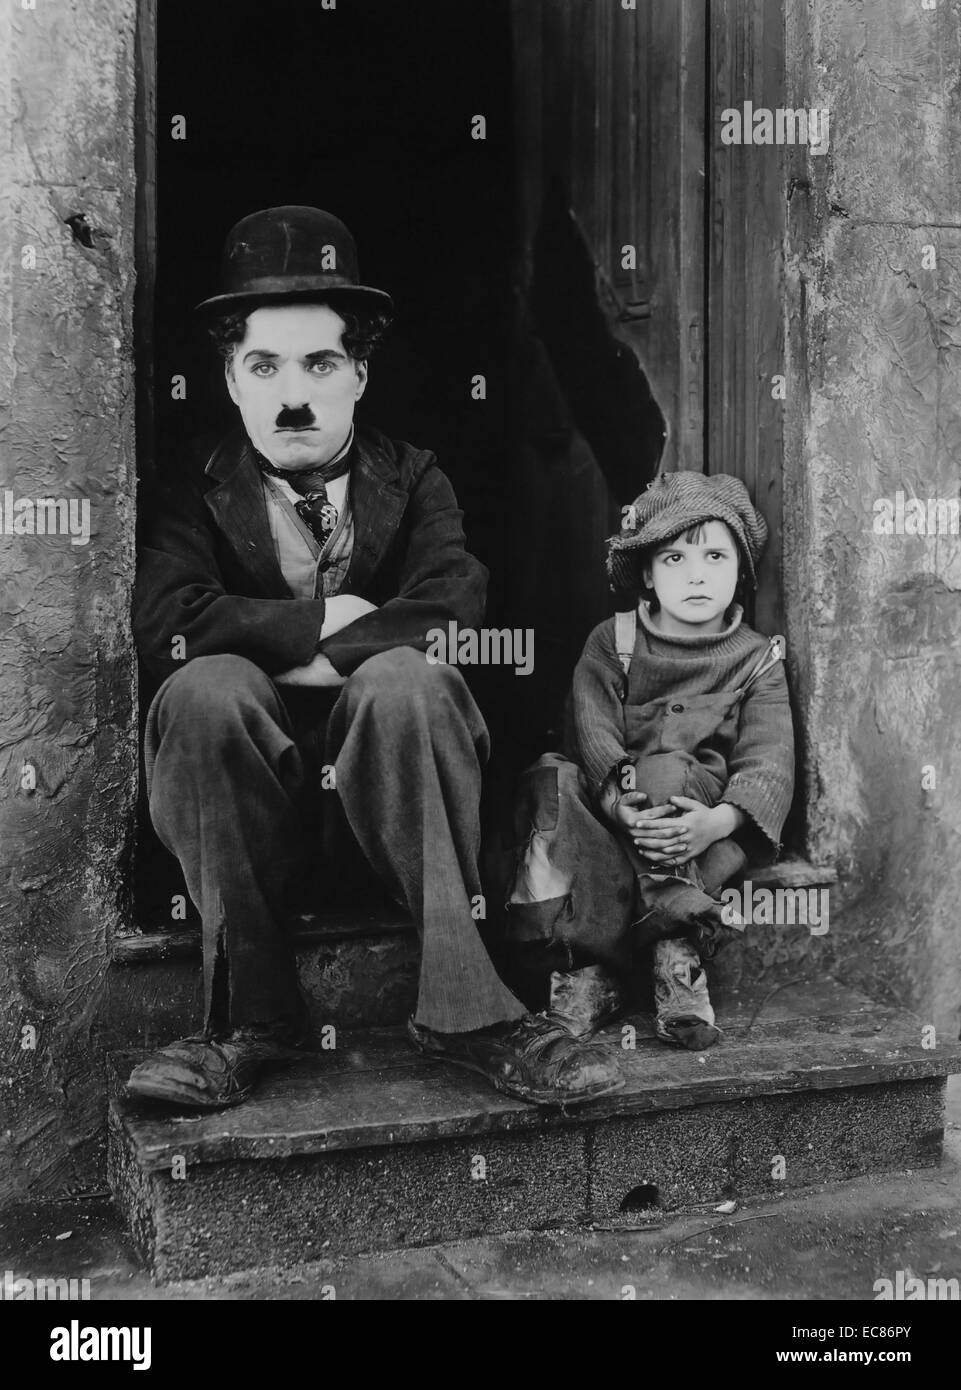 Noch aus dem Film "The Kid" stillen Komödie - Drama Film geschrieben von, produziert von, von und mit Charlie Chaplin gerichtet. Vom 1921 Stockfoto